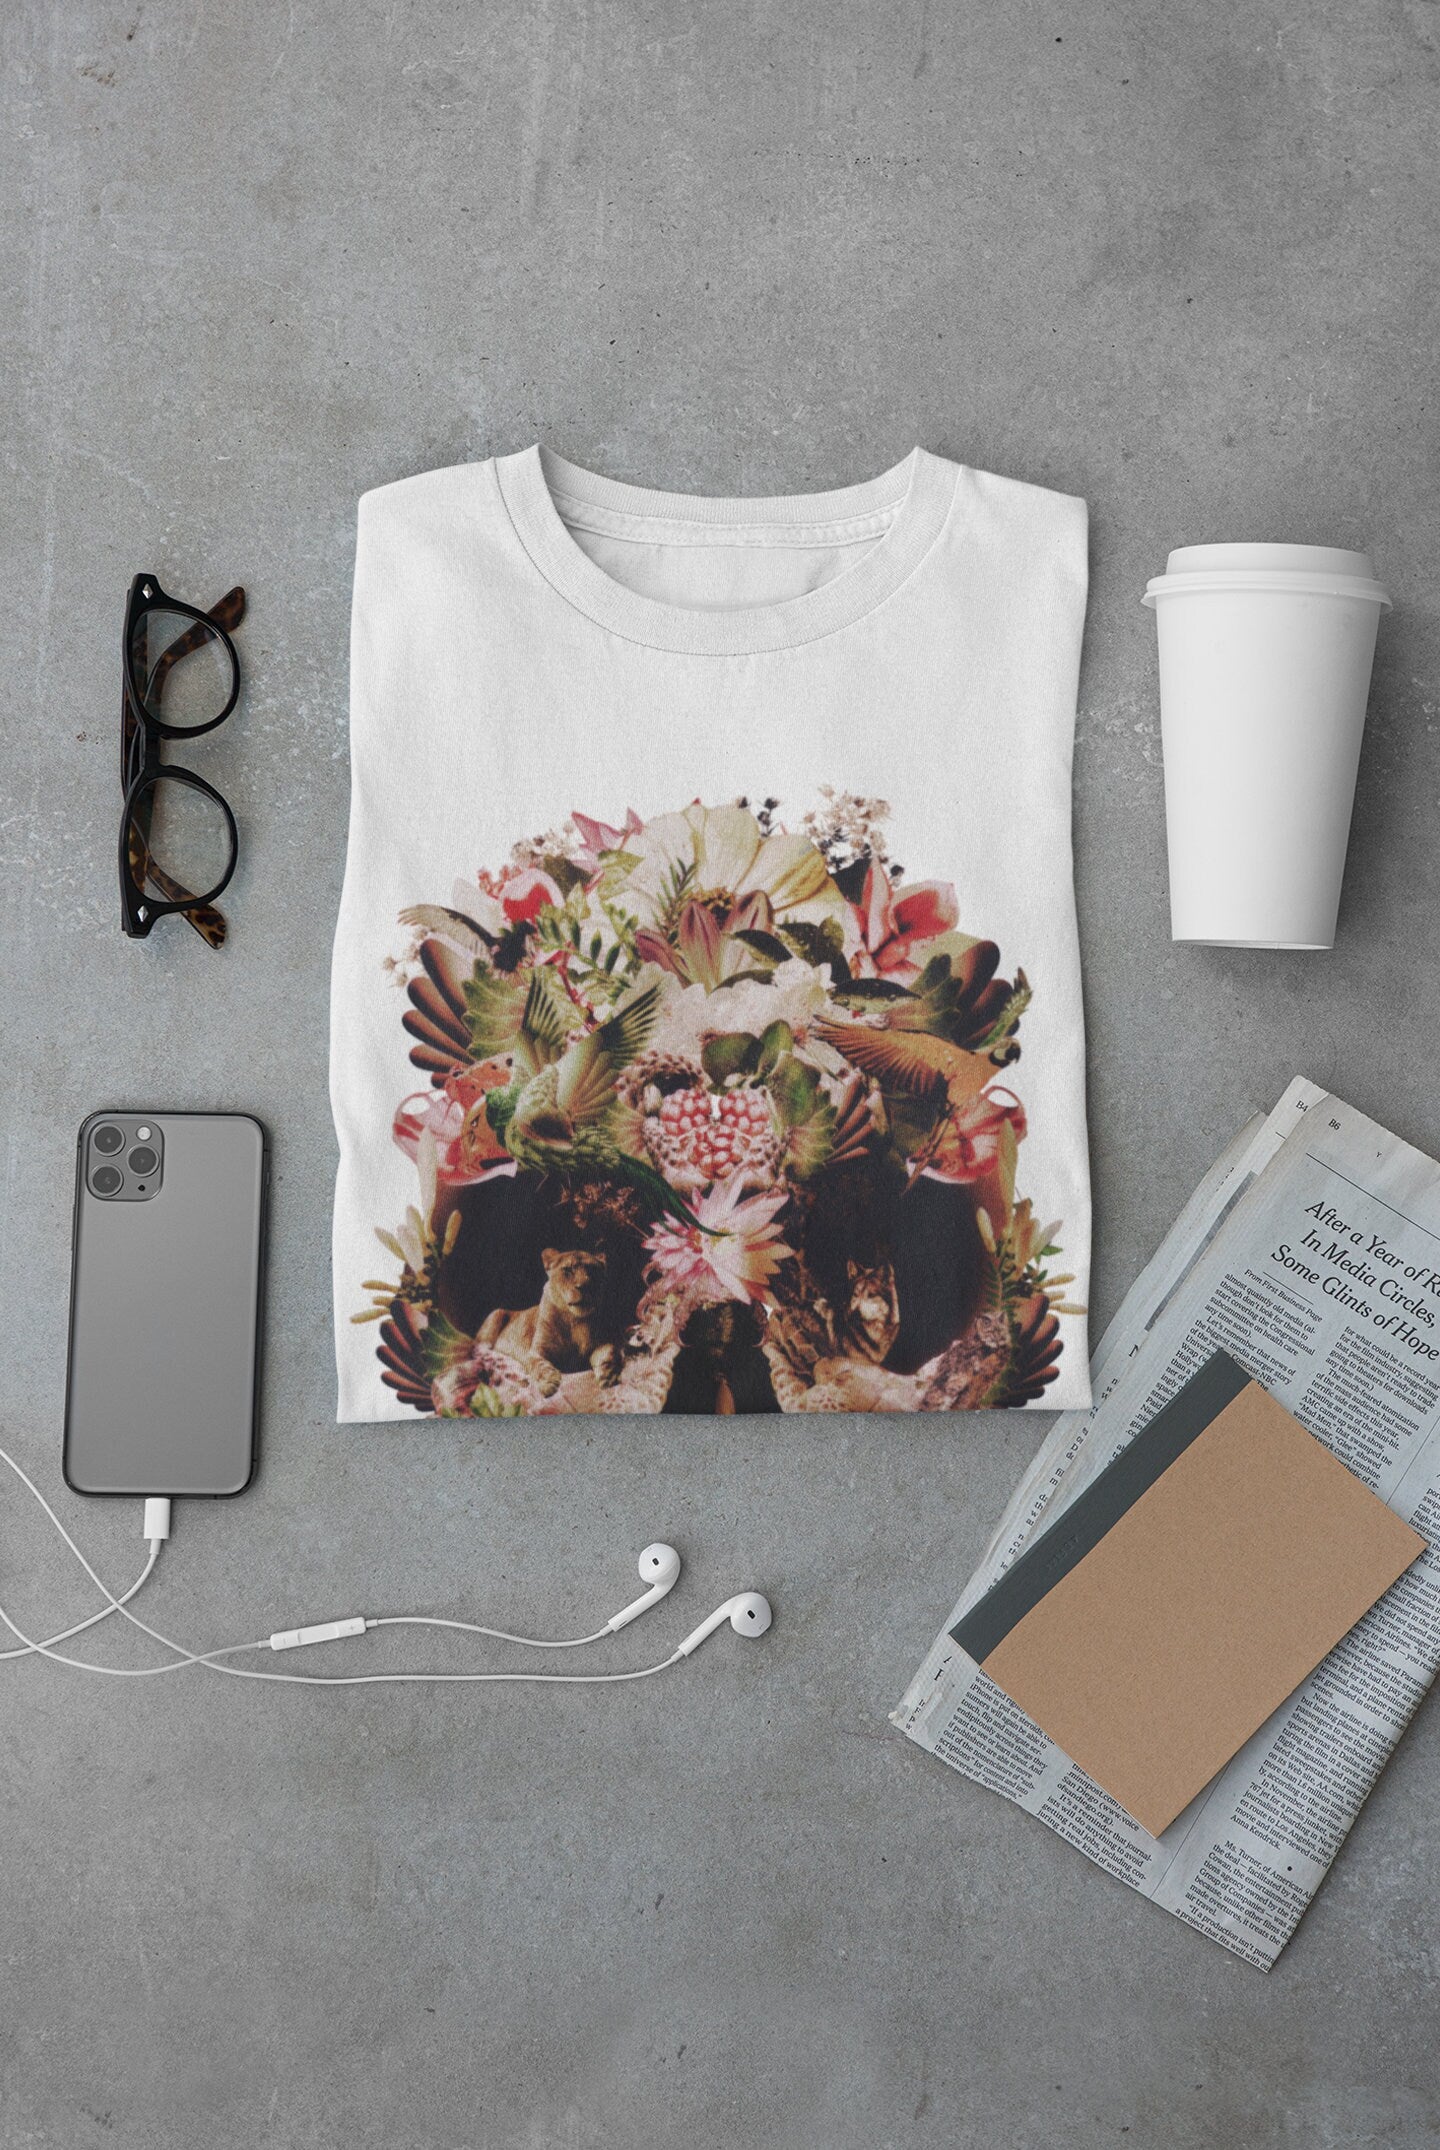 Jungle Skull Men's T-shirt, Flower Skull Mens Graphic Tee, Sugar Skull Mens TShirt, Bella Canvas Skull Print Shirt Gift For Him